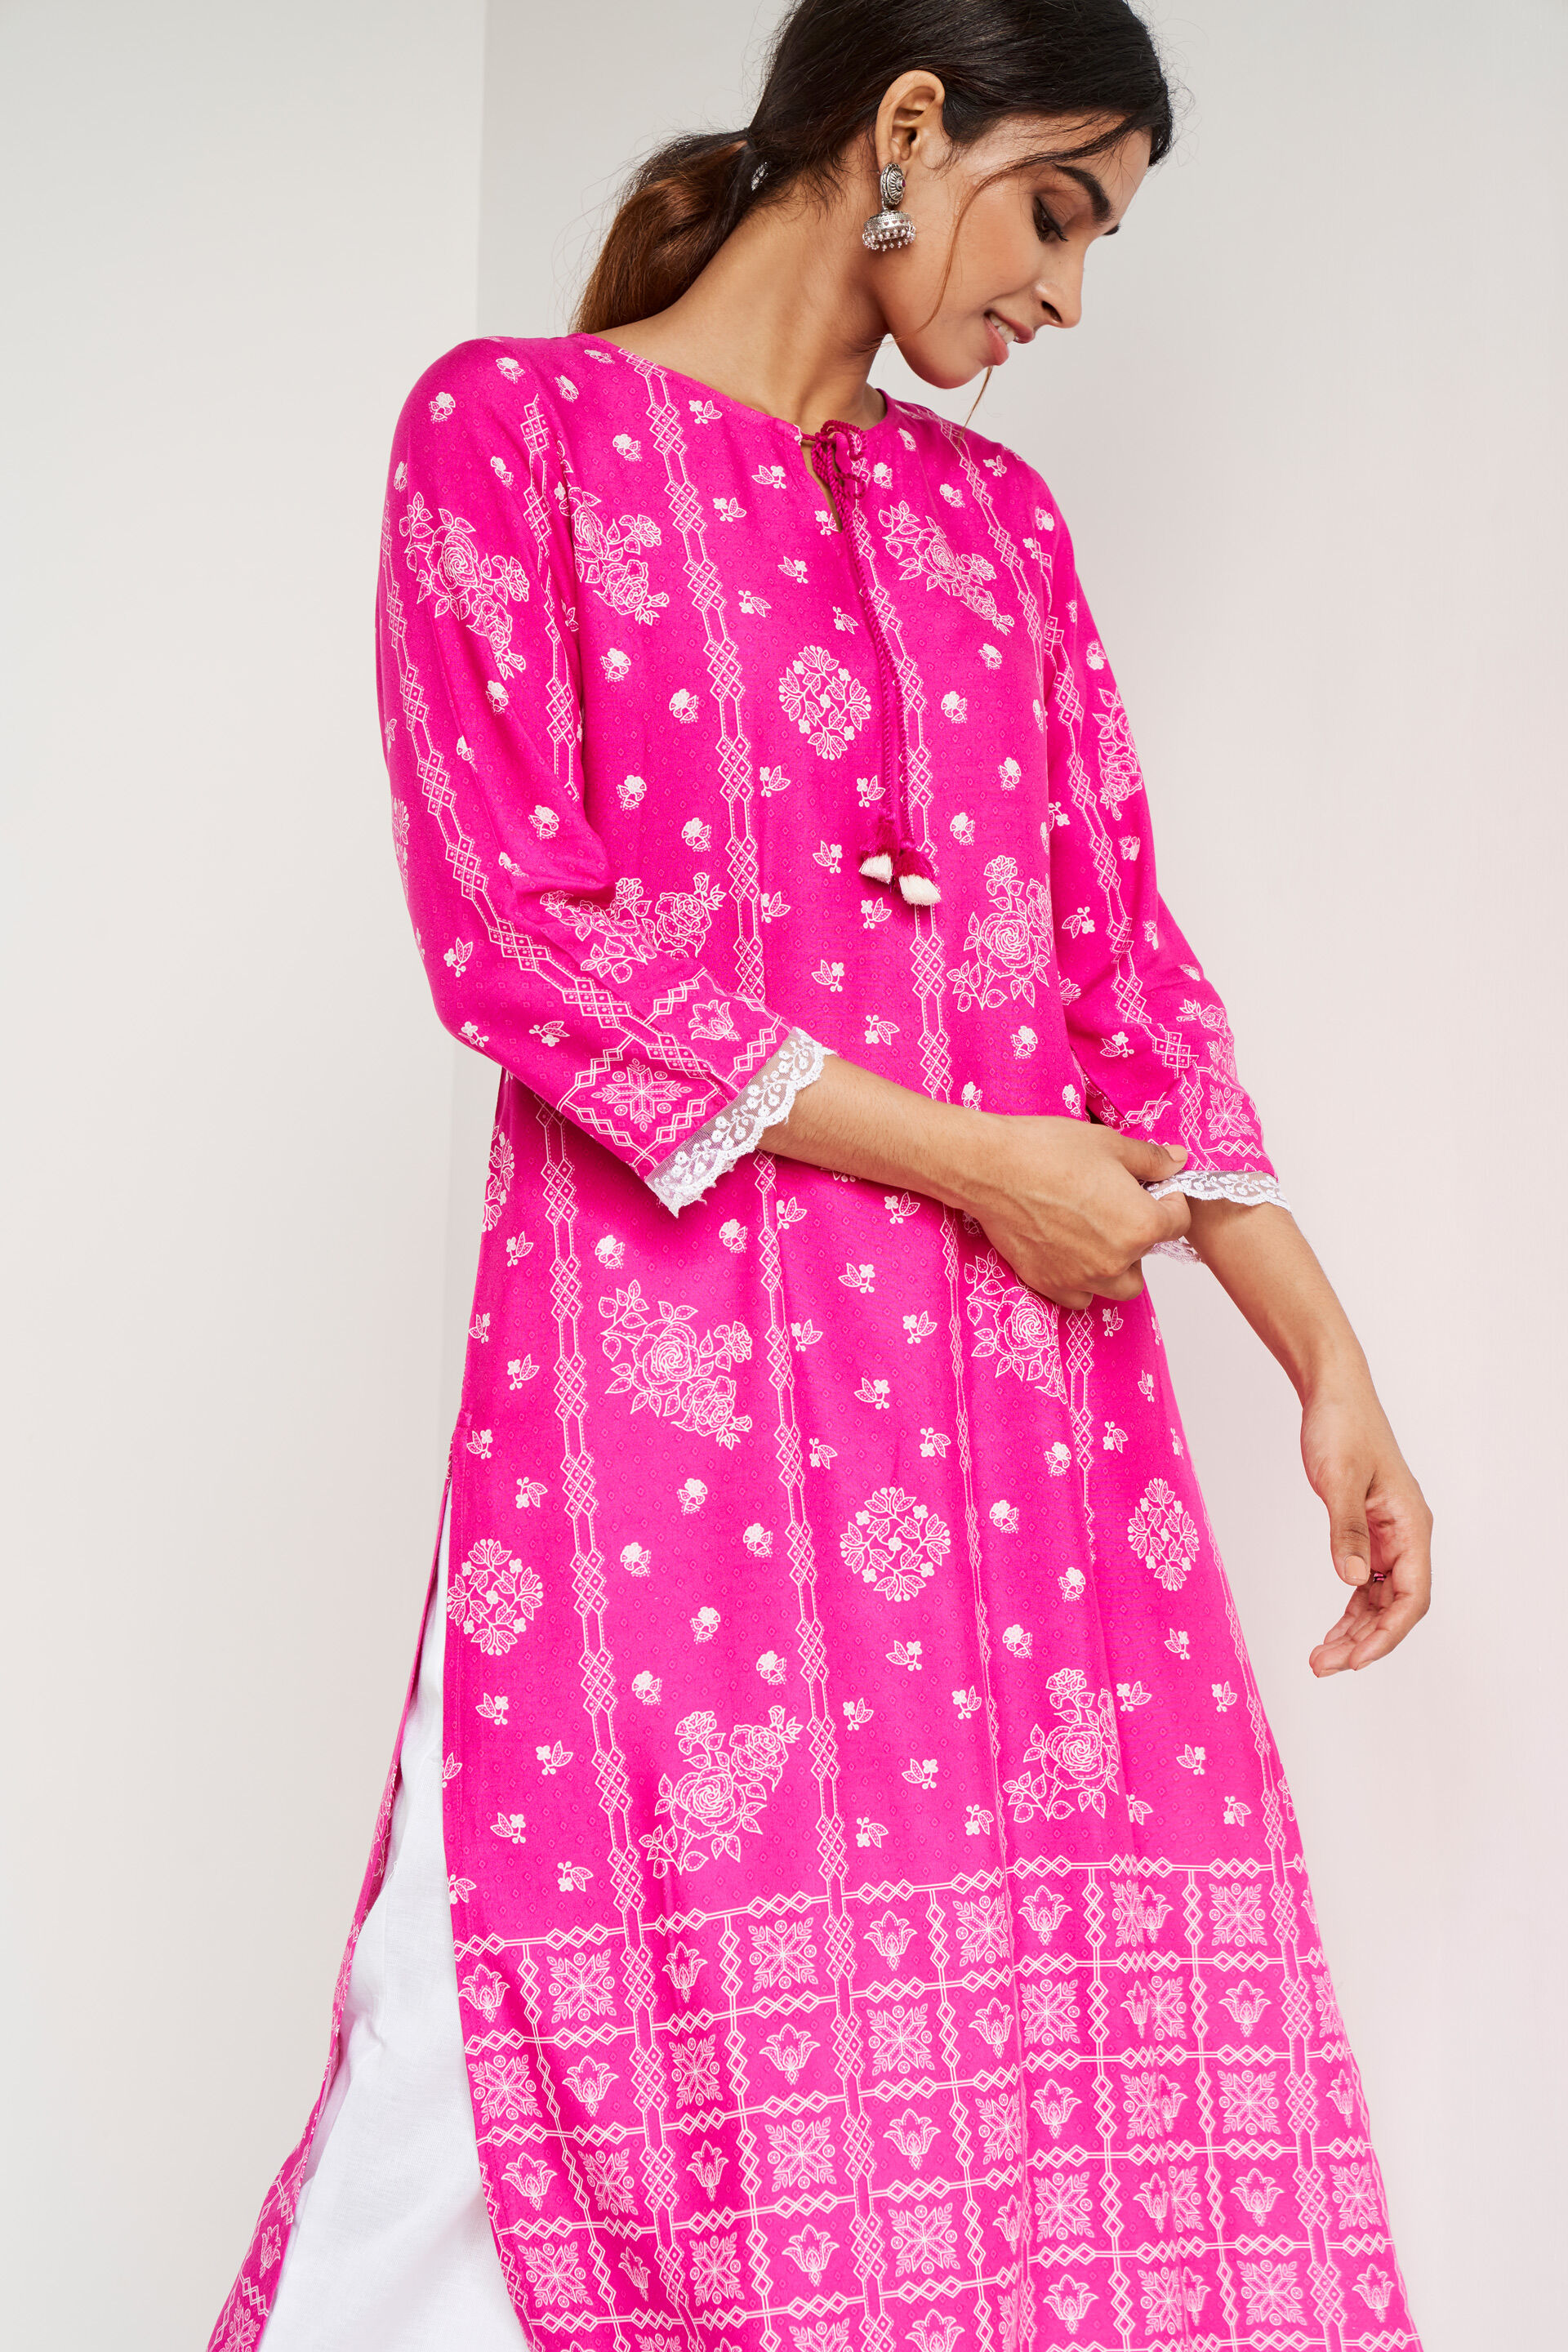 Designer Kurtis - Buy Kurti Online, Women Kurta Shopping | Party wear  dresses, Long kurti designs, Indian fashion dresses